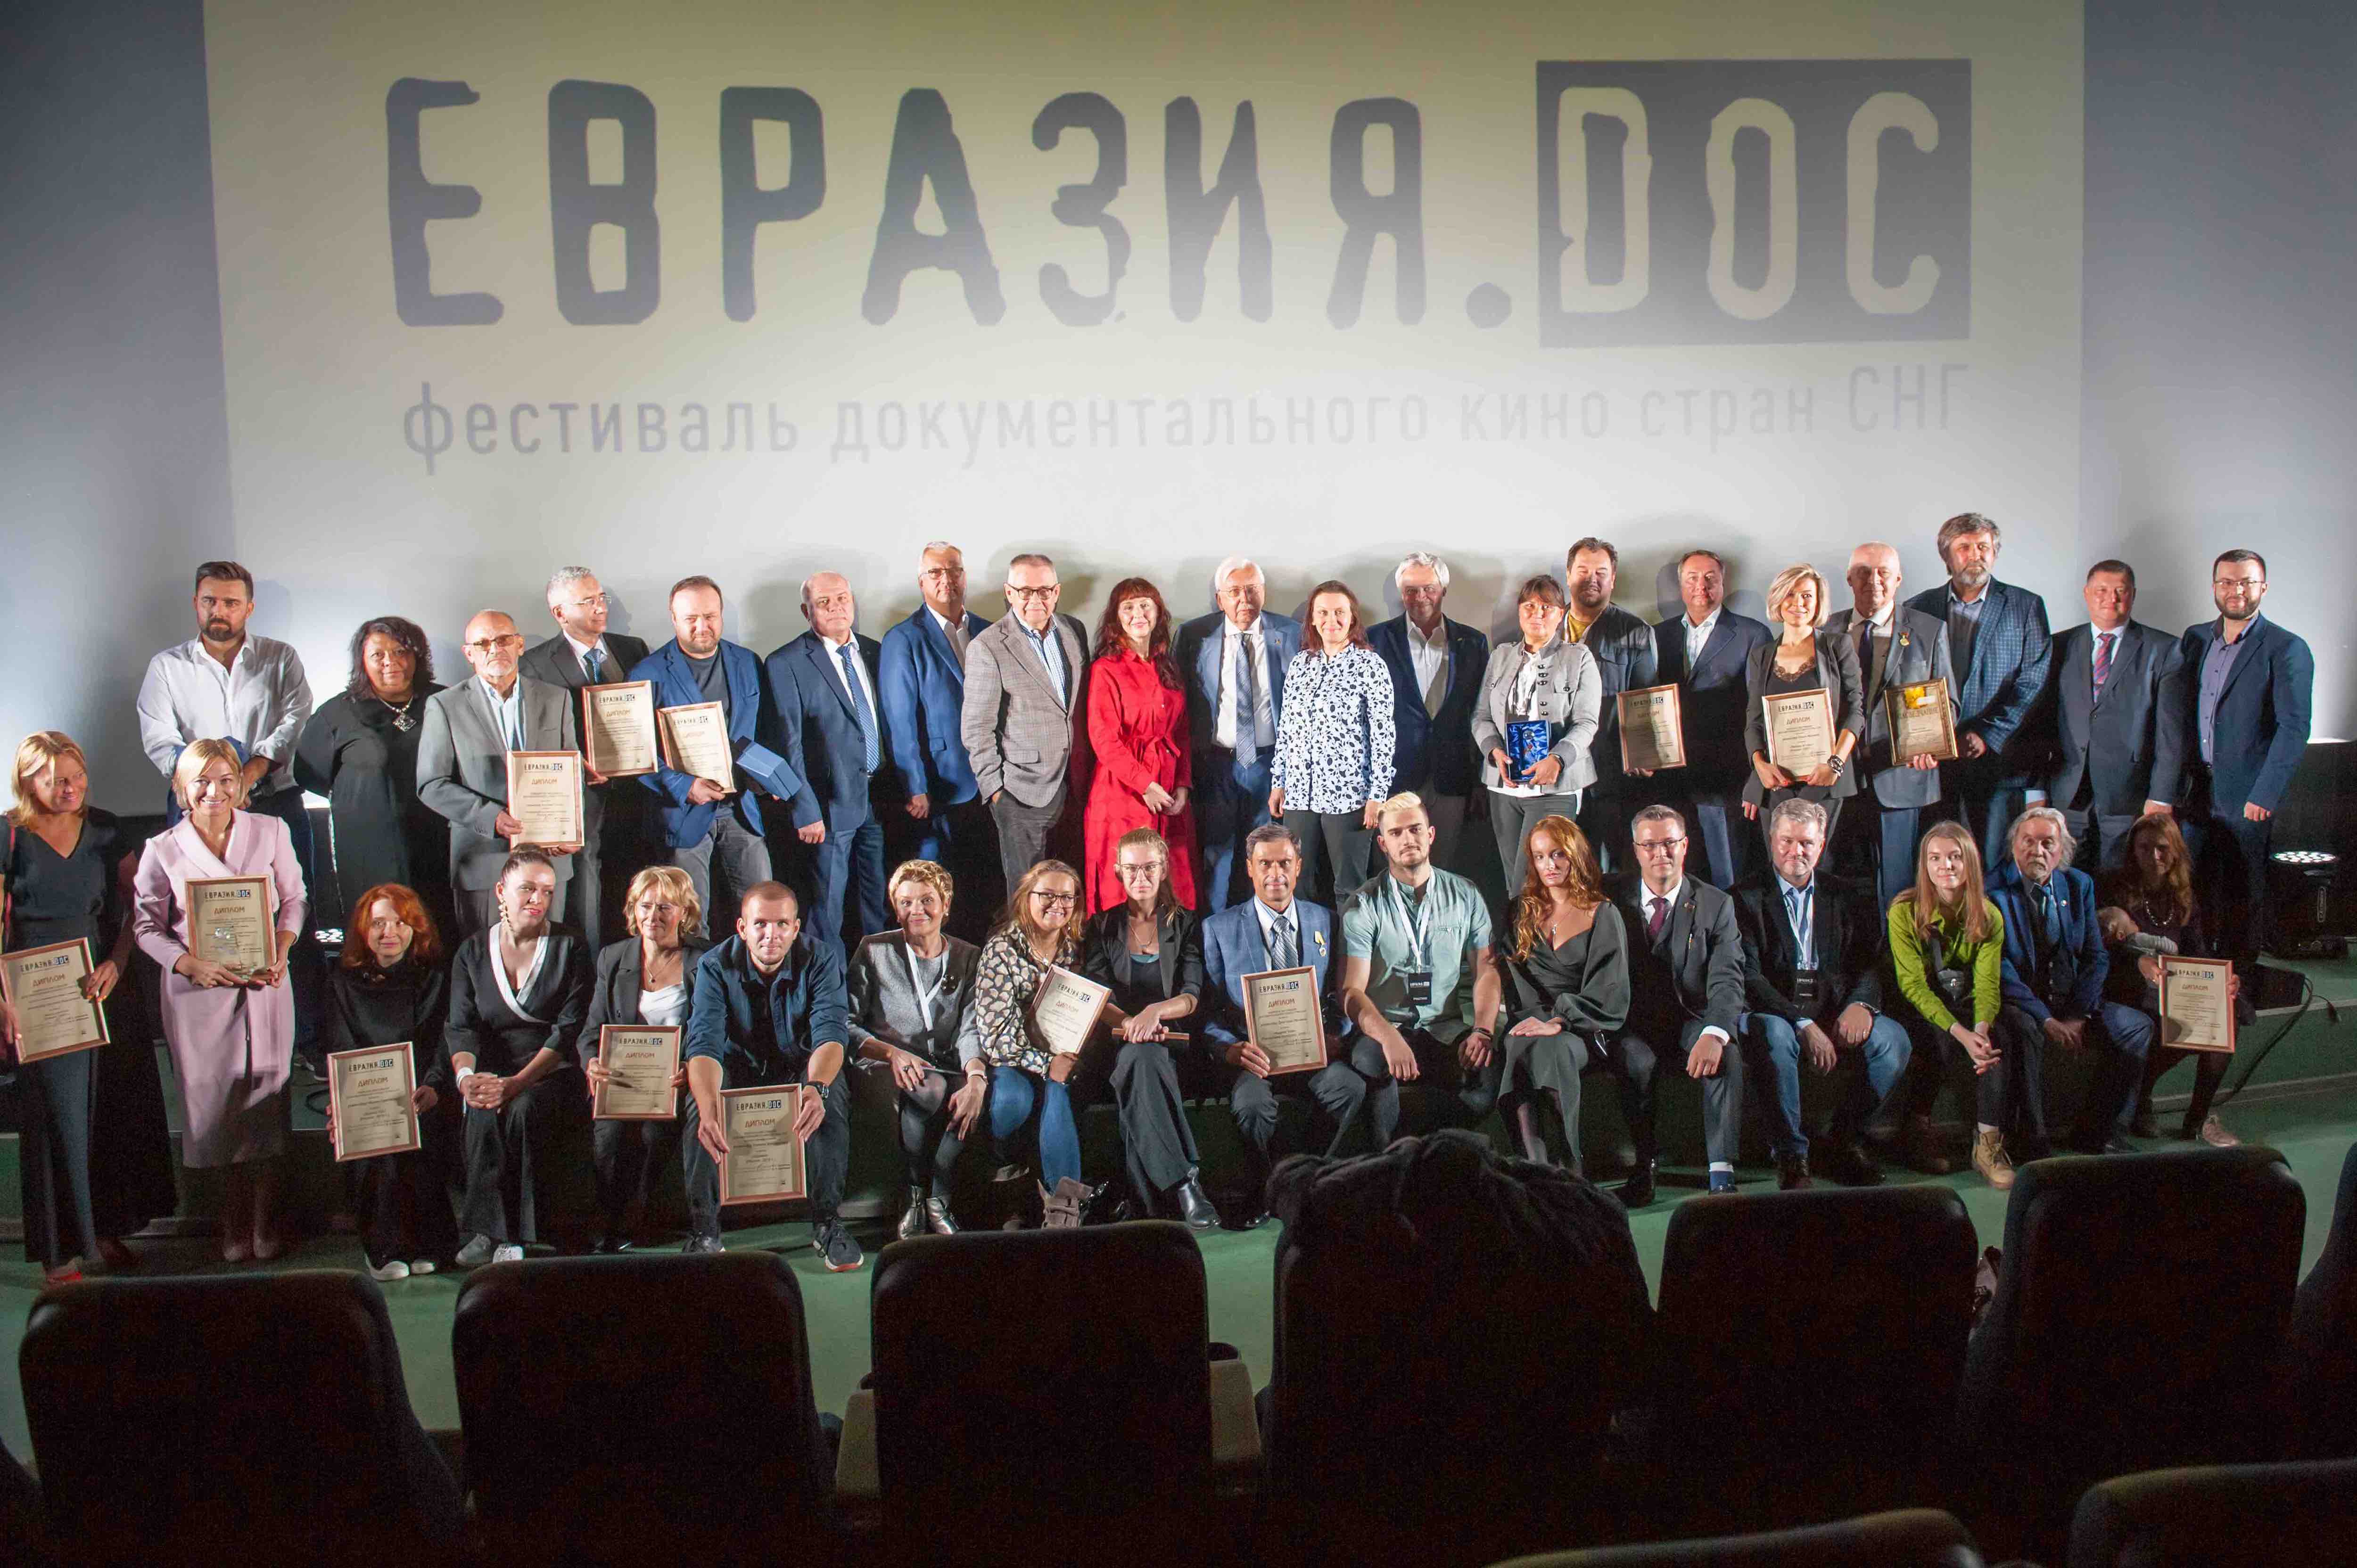 Организаторы, участники и эксперты V Фестиваля документального кино стран СНГ «Евразия.DOC»